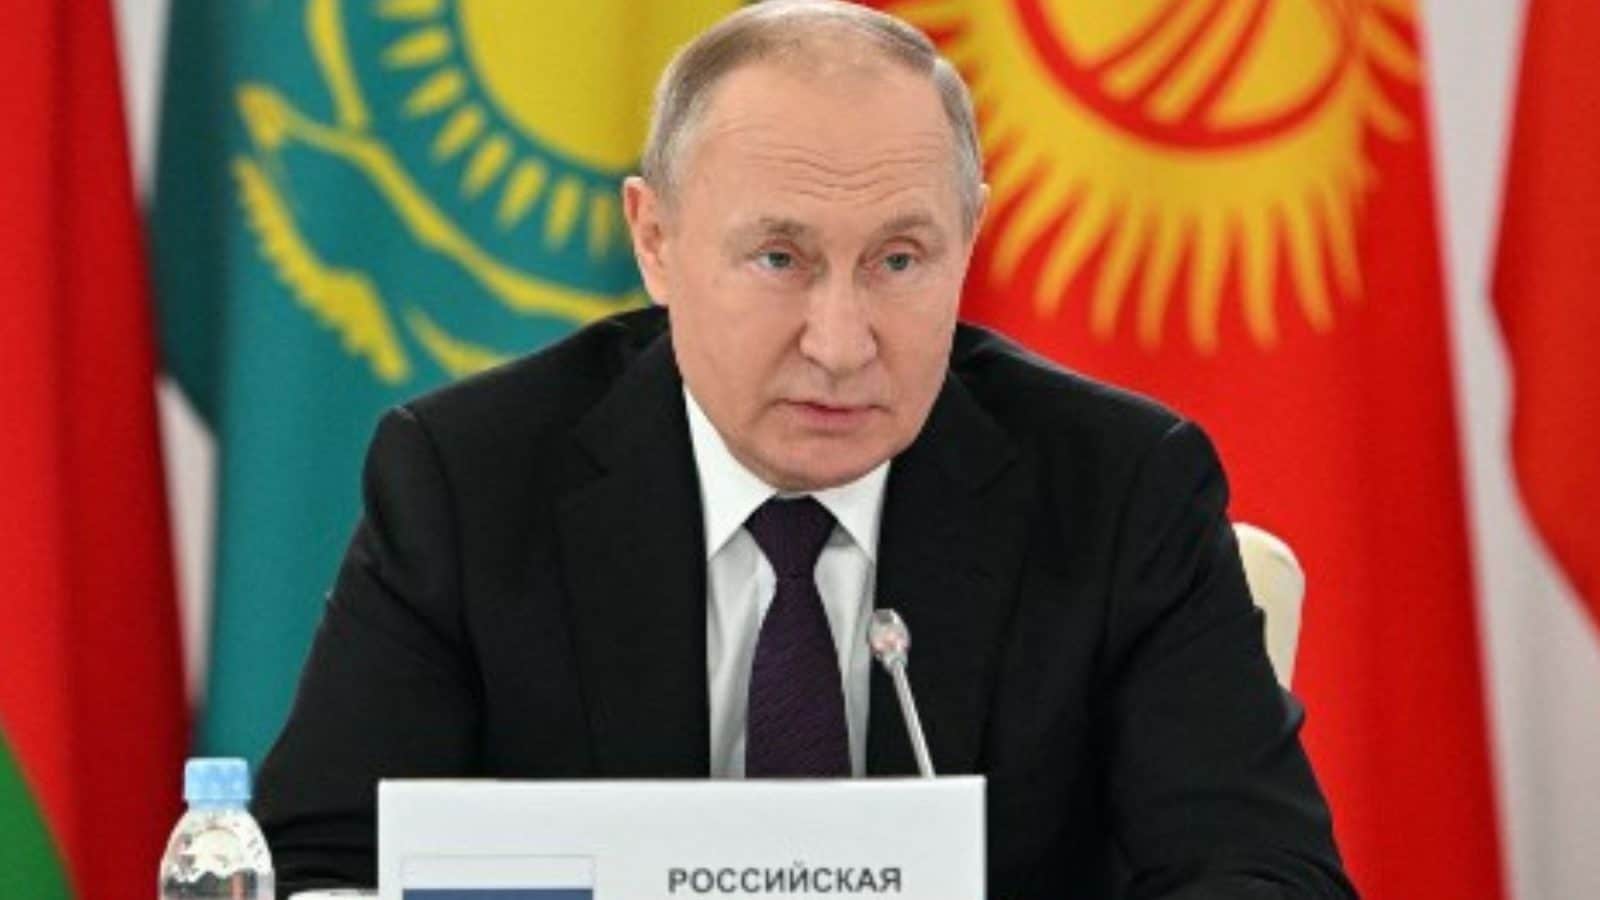 पुतिन ने पश्चिम के खिलाफ जवाबी कार्रवाई की, प्राइस कैप लागू करने वाले देशों के लिए रूसी तेल पर प्रतिबंध लगाया